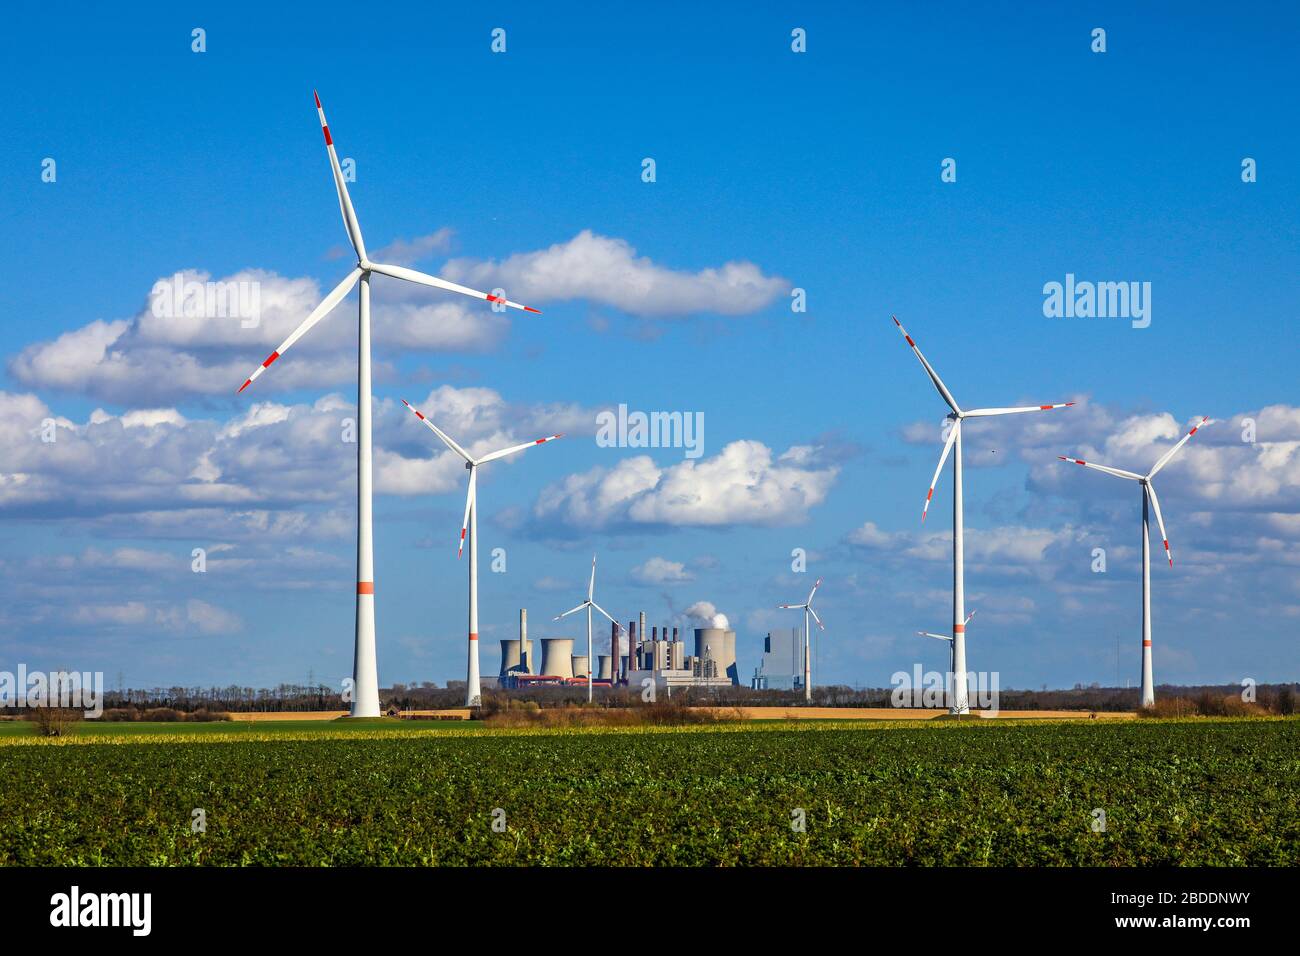 12.03.2020, Grevenbroich, North Rhine-Westphalia, Germany - Wind farm at the RWE power plant Neurath, lignite power plant at the RWE lignite opencast Stock Photo